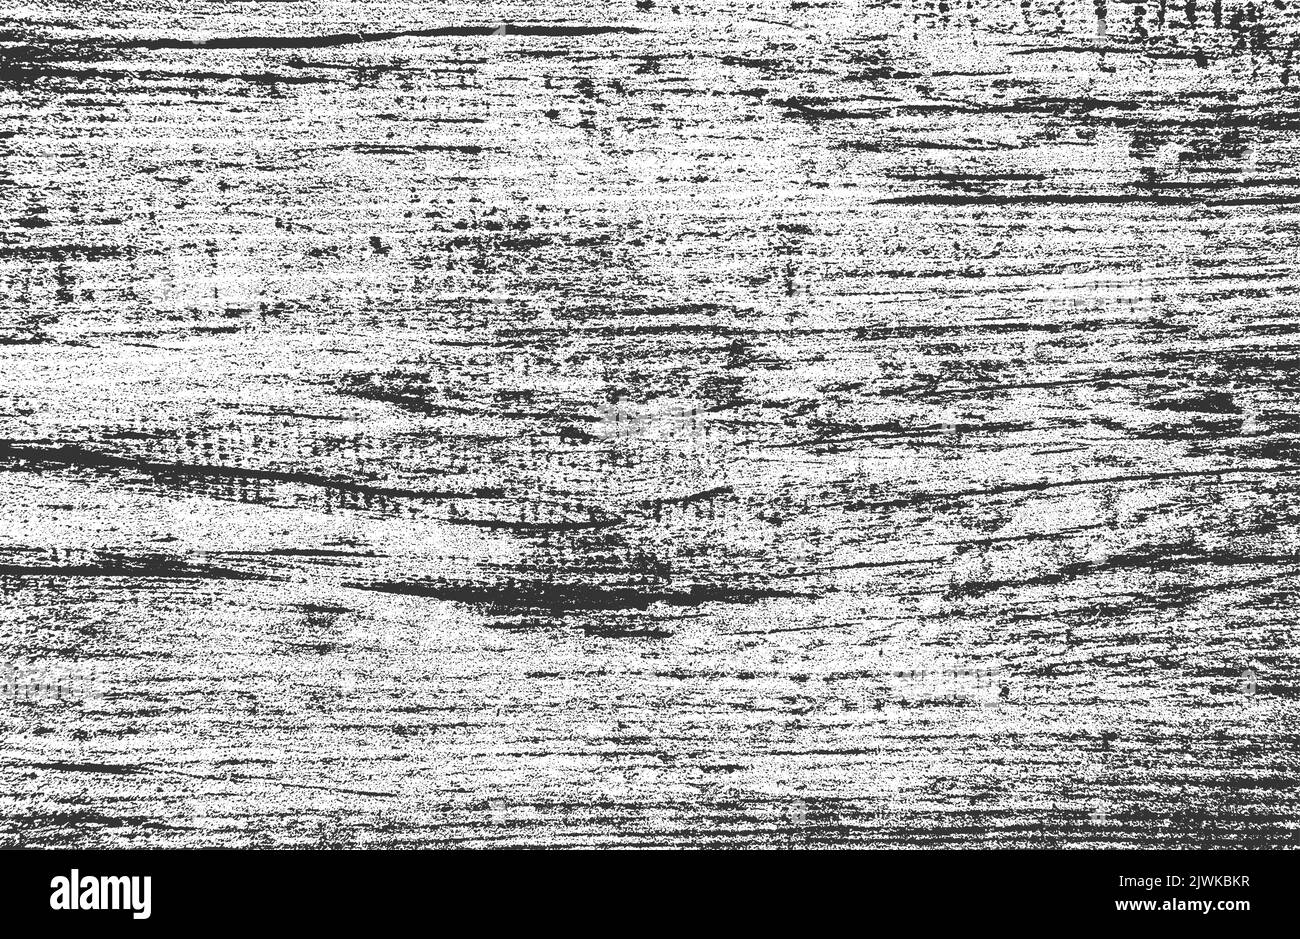 Verzweifelte Overlay-Textur von rissigen Beton, Stein oder Asphalt. Grunge Hintergrund. Abstrakte Halbton-Vektor-Illustration Stock Vektor